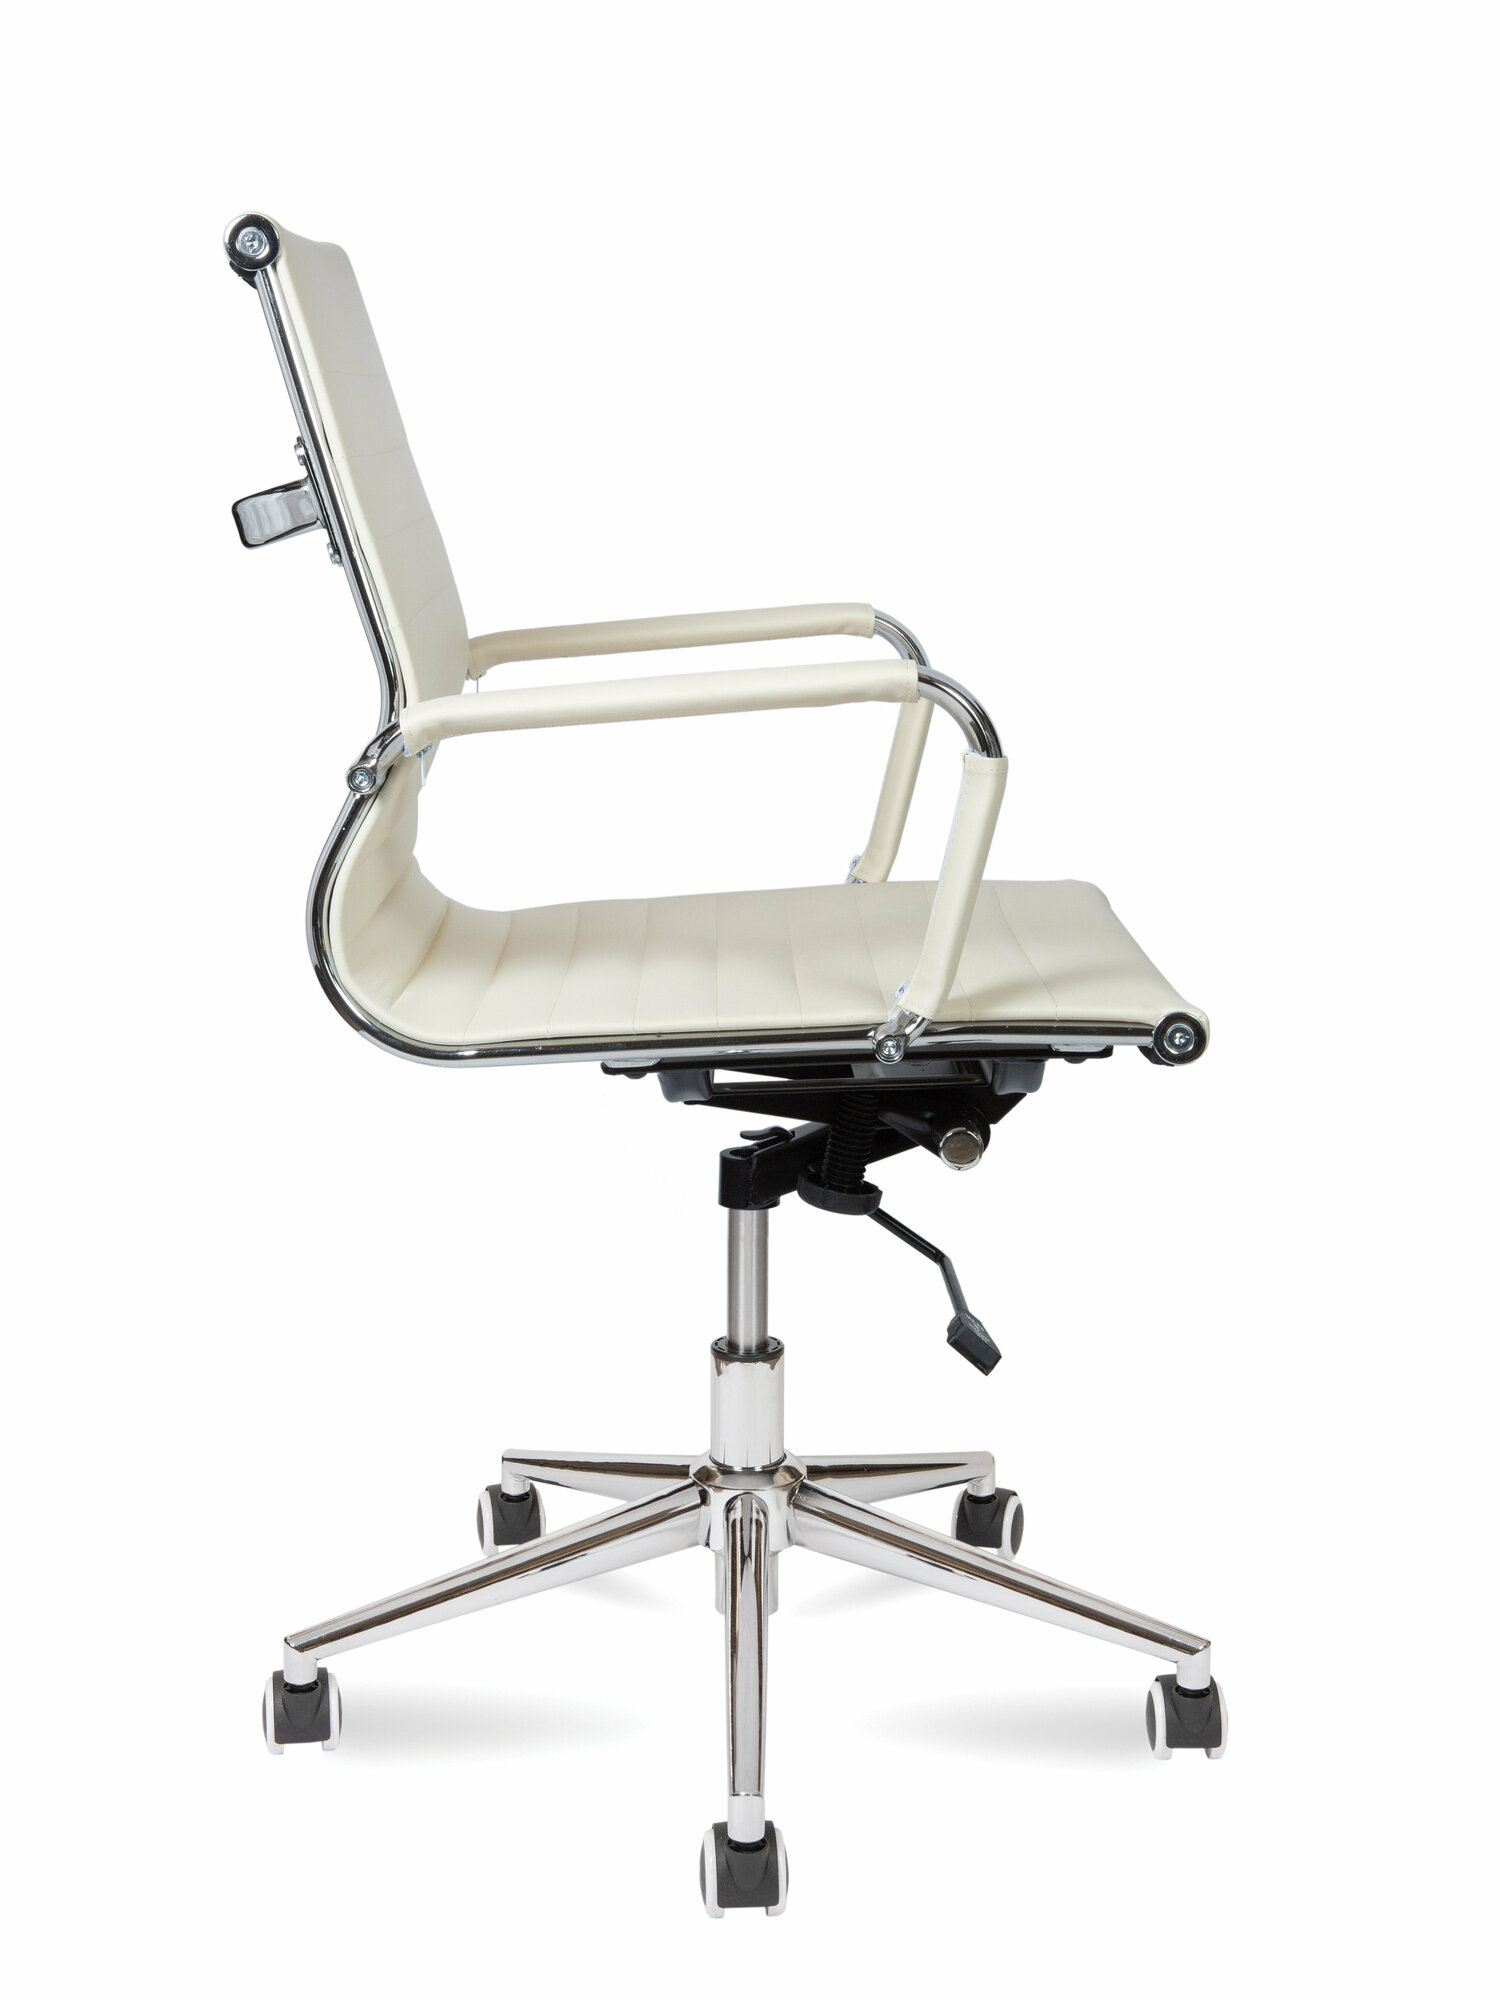 Офисное кресло Norden chairs Техно LB обивка: искусственная кожа